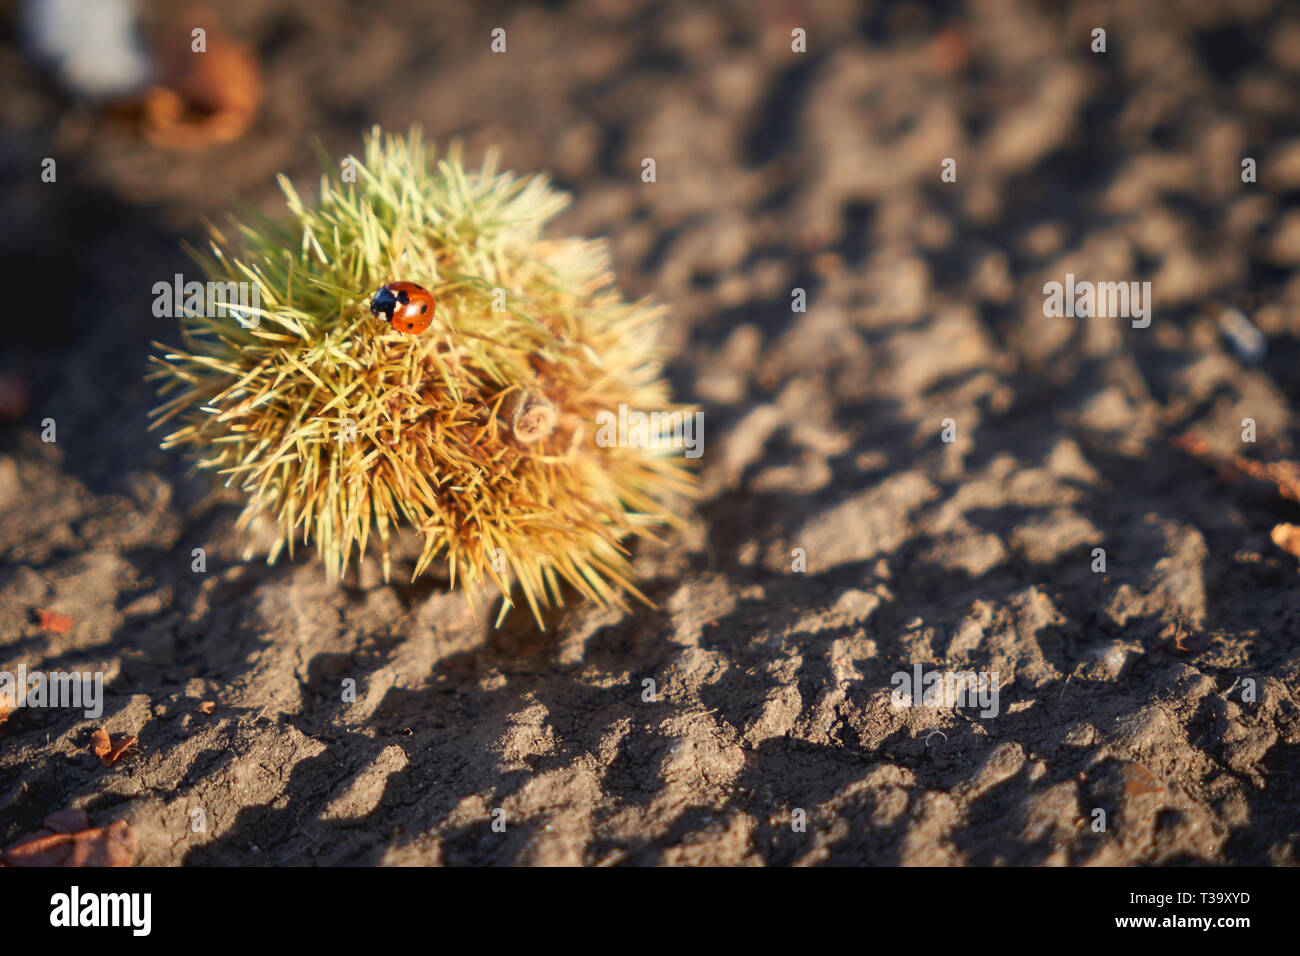 A ladybug on a chestnut bur. Landscape format. Stock Photo